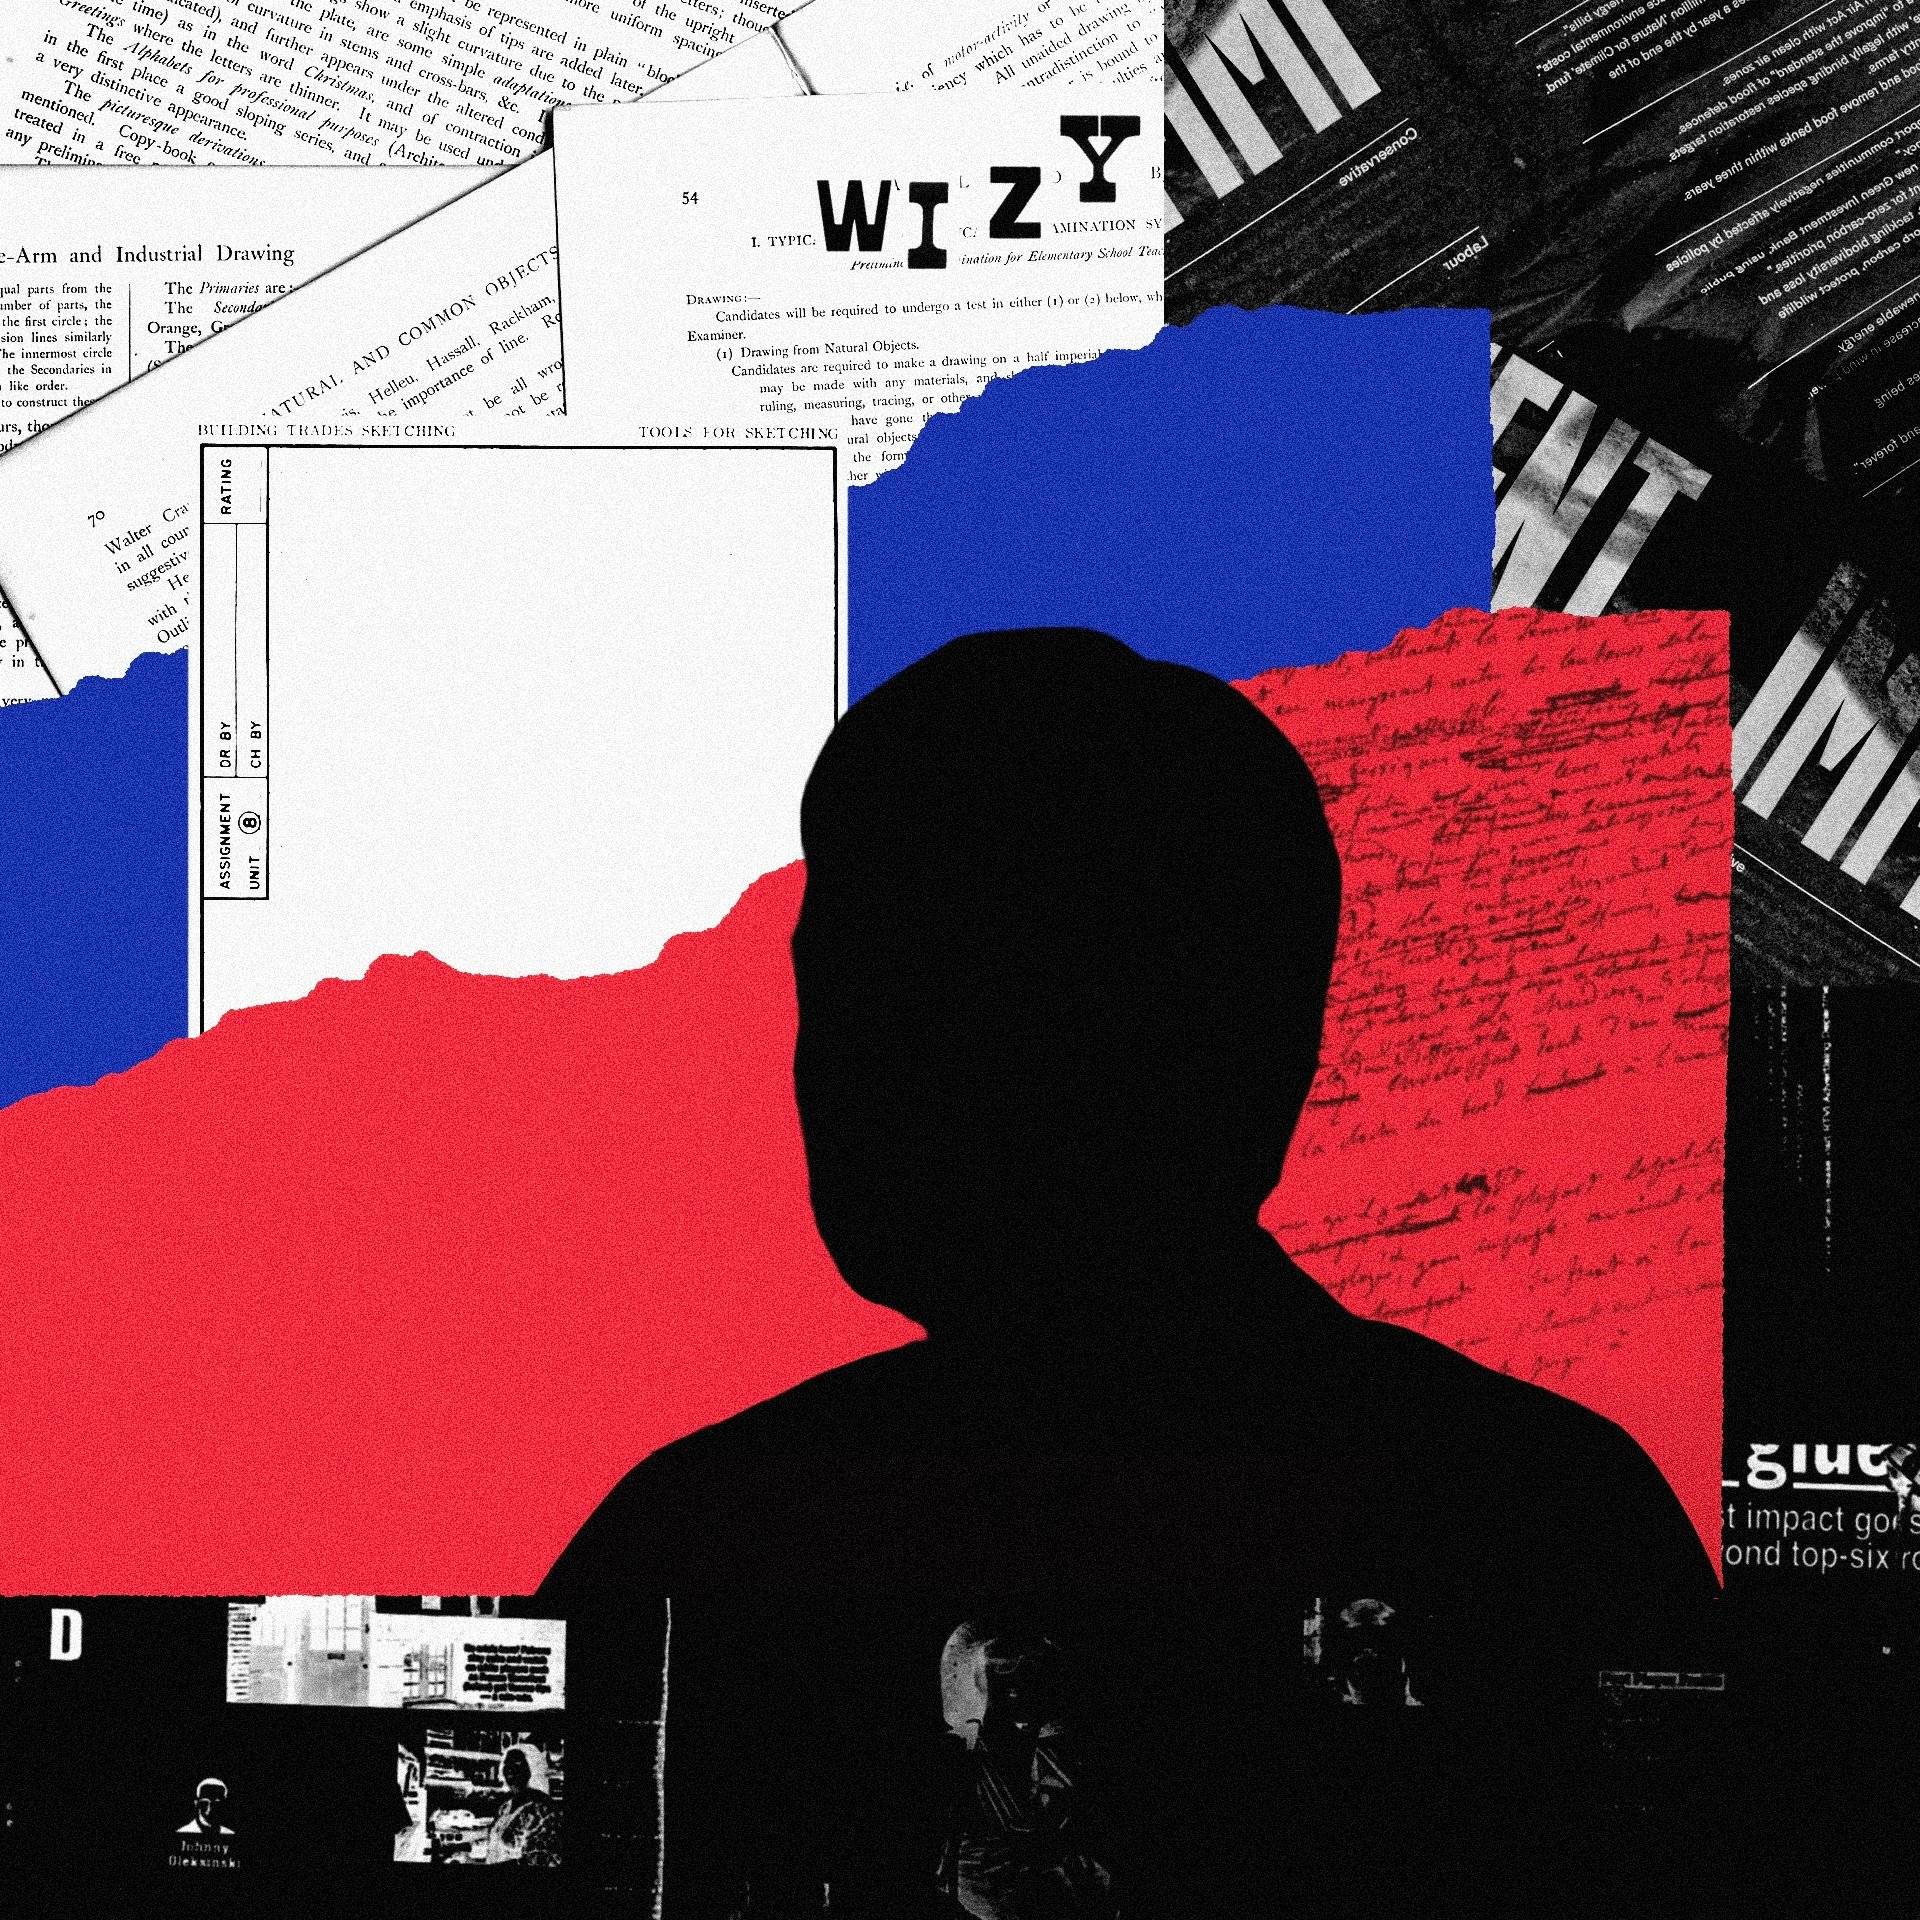 Ilustracja przedstawiająca postać na tle dokumentów układających się w kolory rosyjskiej flagi.